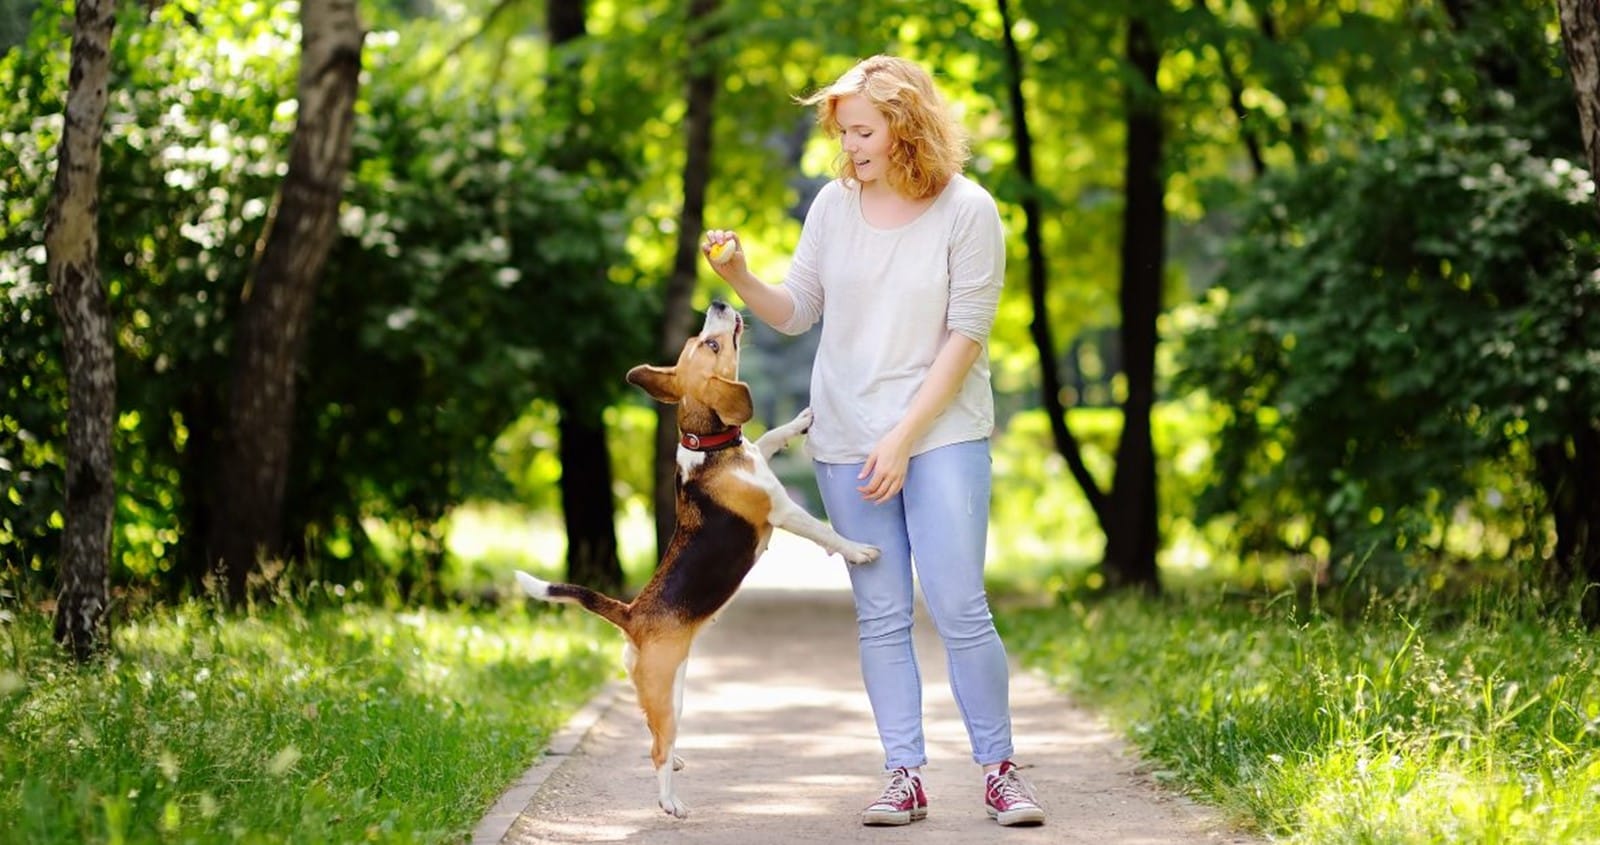 Можно гулять с собакой в парке. Прогулка с собакой в парке. Фотосессия в парке летом с собакой. Прогулка с собакой летом. Собаки гуляют в парке.